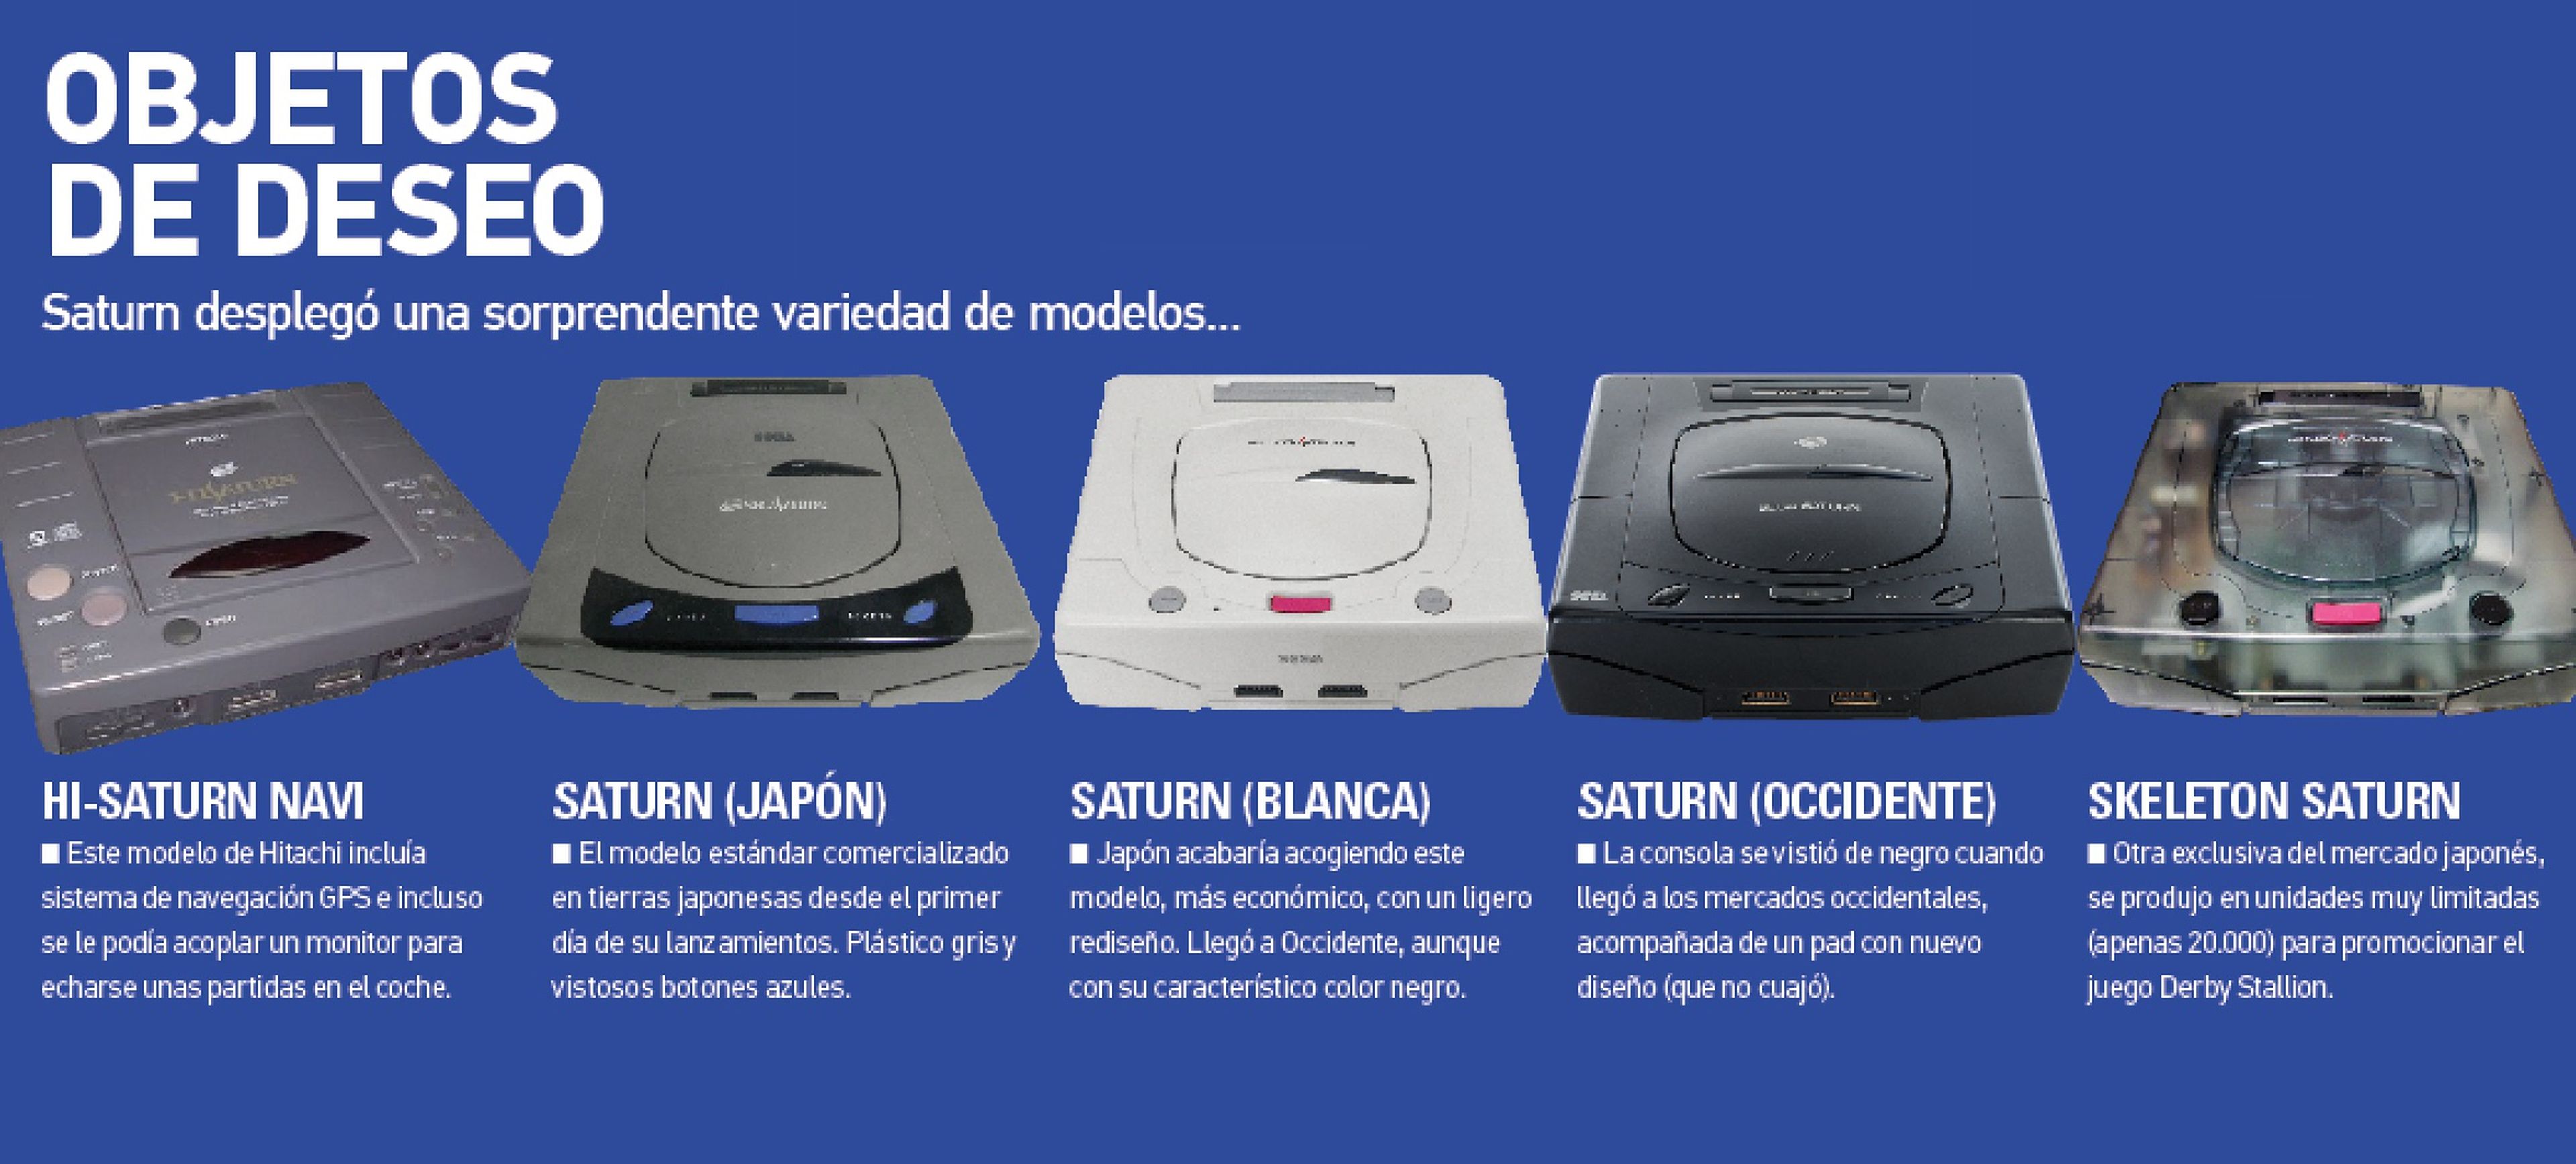 El SEGA Saturn hoy cumple 25 años desde su lanzamiento en América!